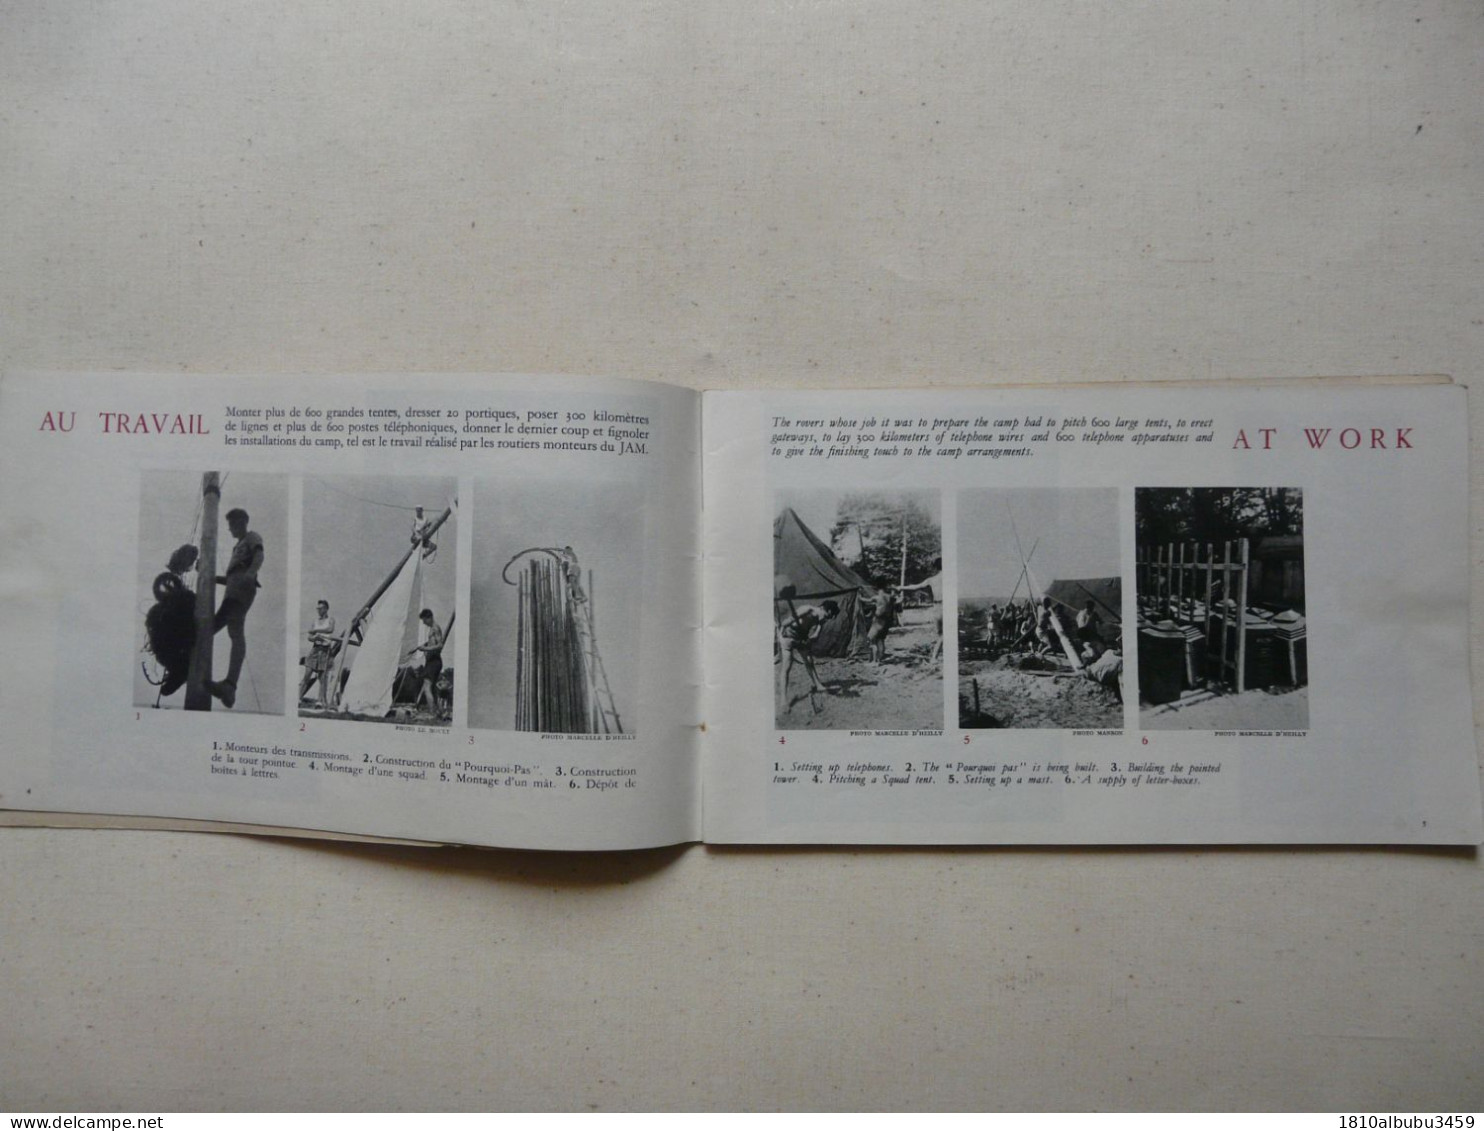 LE JAMBOREE DE LA PAIX - MOISSON 1947 : Broché 72 Pages - Nombreuses Illustrations Et Photos En Noir Et Blanc - Scouting